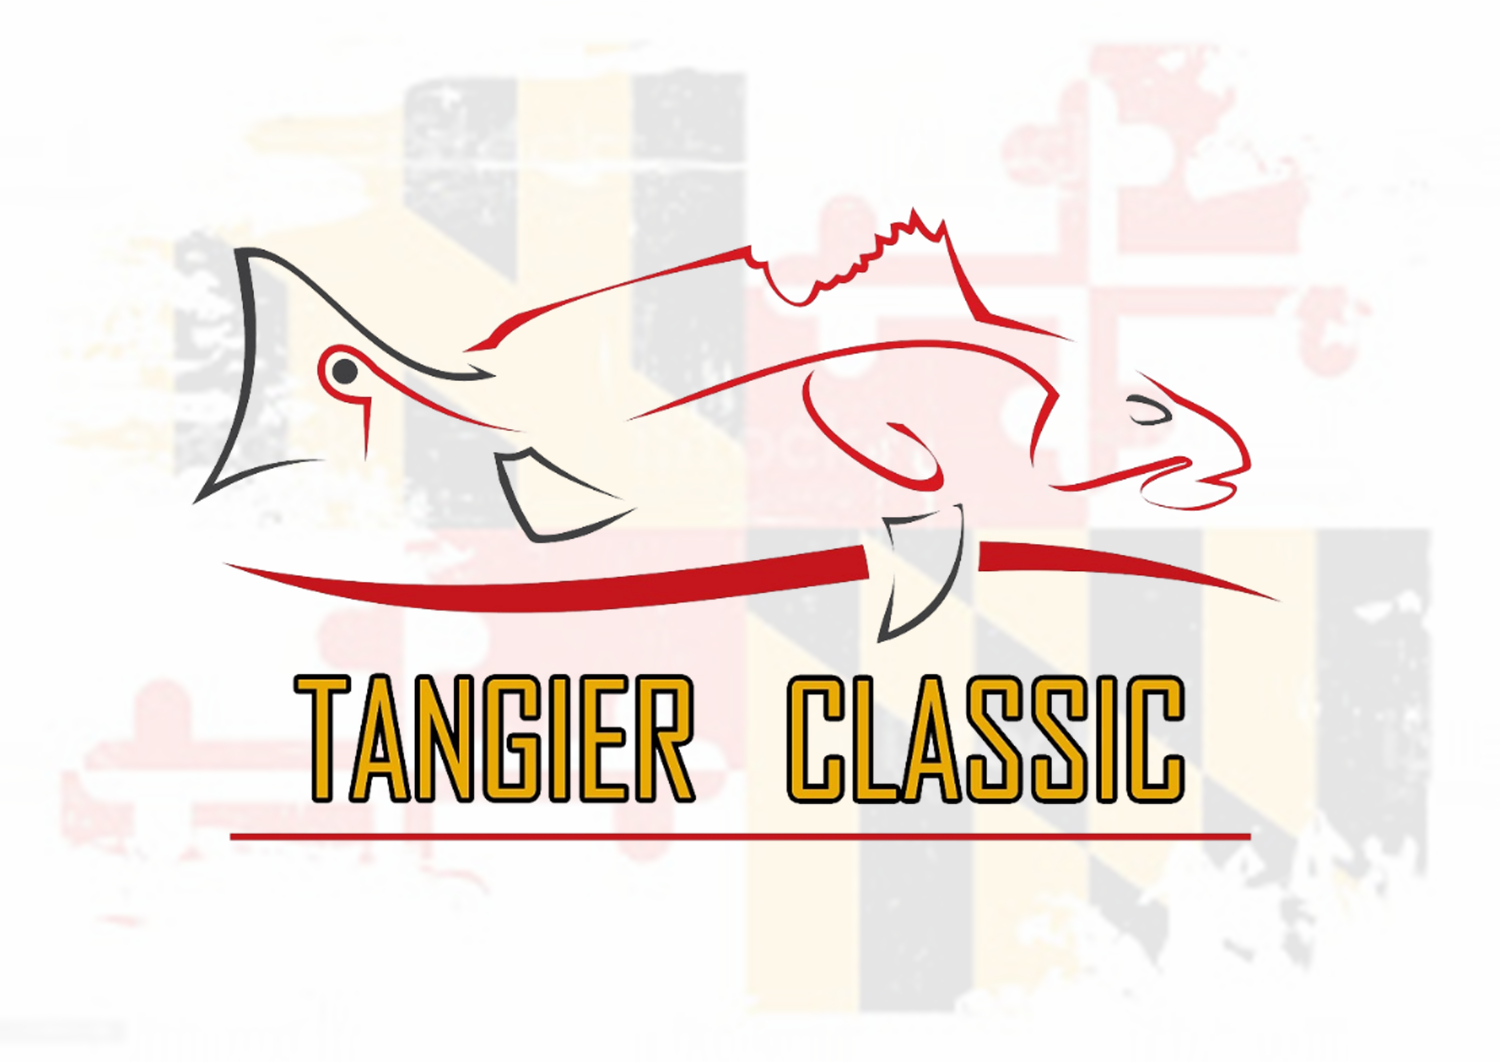 Tangier Classic Inc